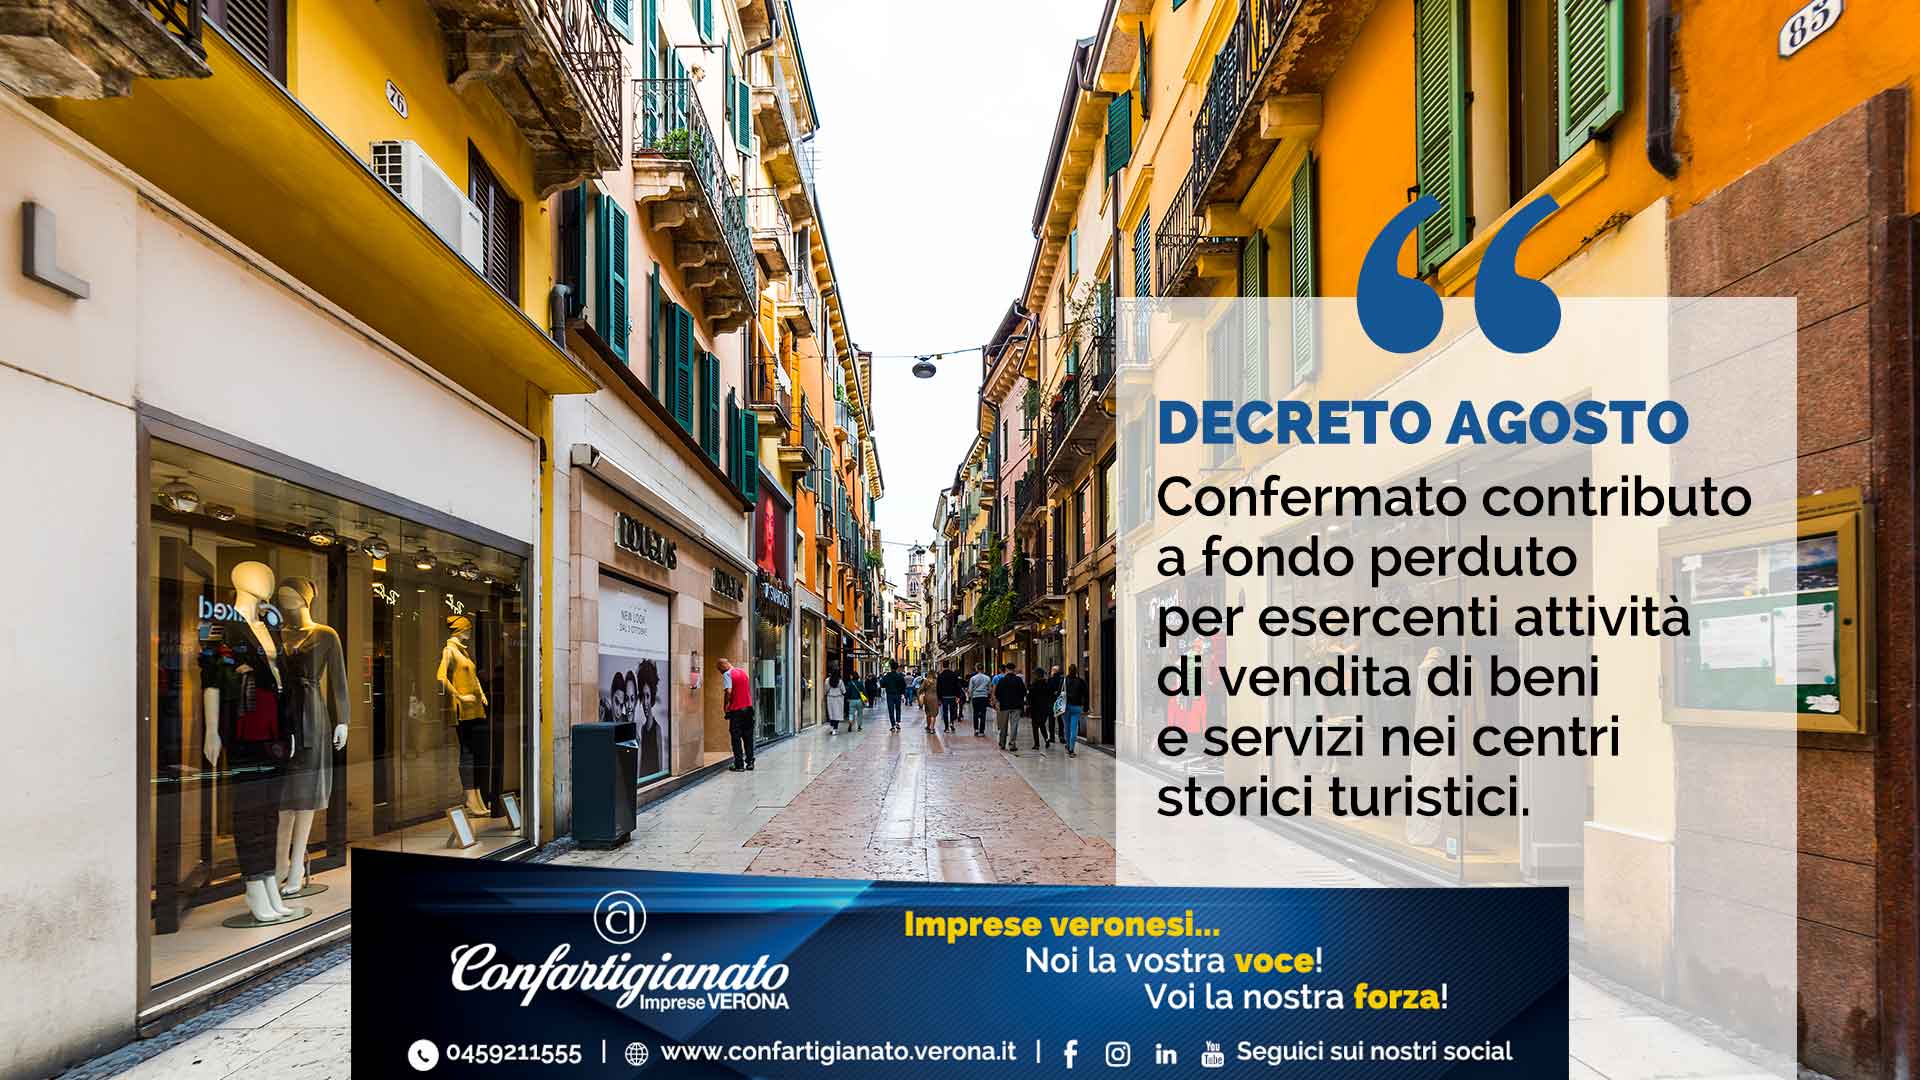 DECRETO AGOSTO – Confermato il contributo a fondo perduto per esercenti attività di vendita di beni e servizi nei centri storici turistici